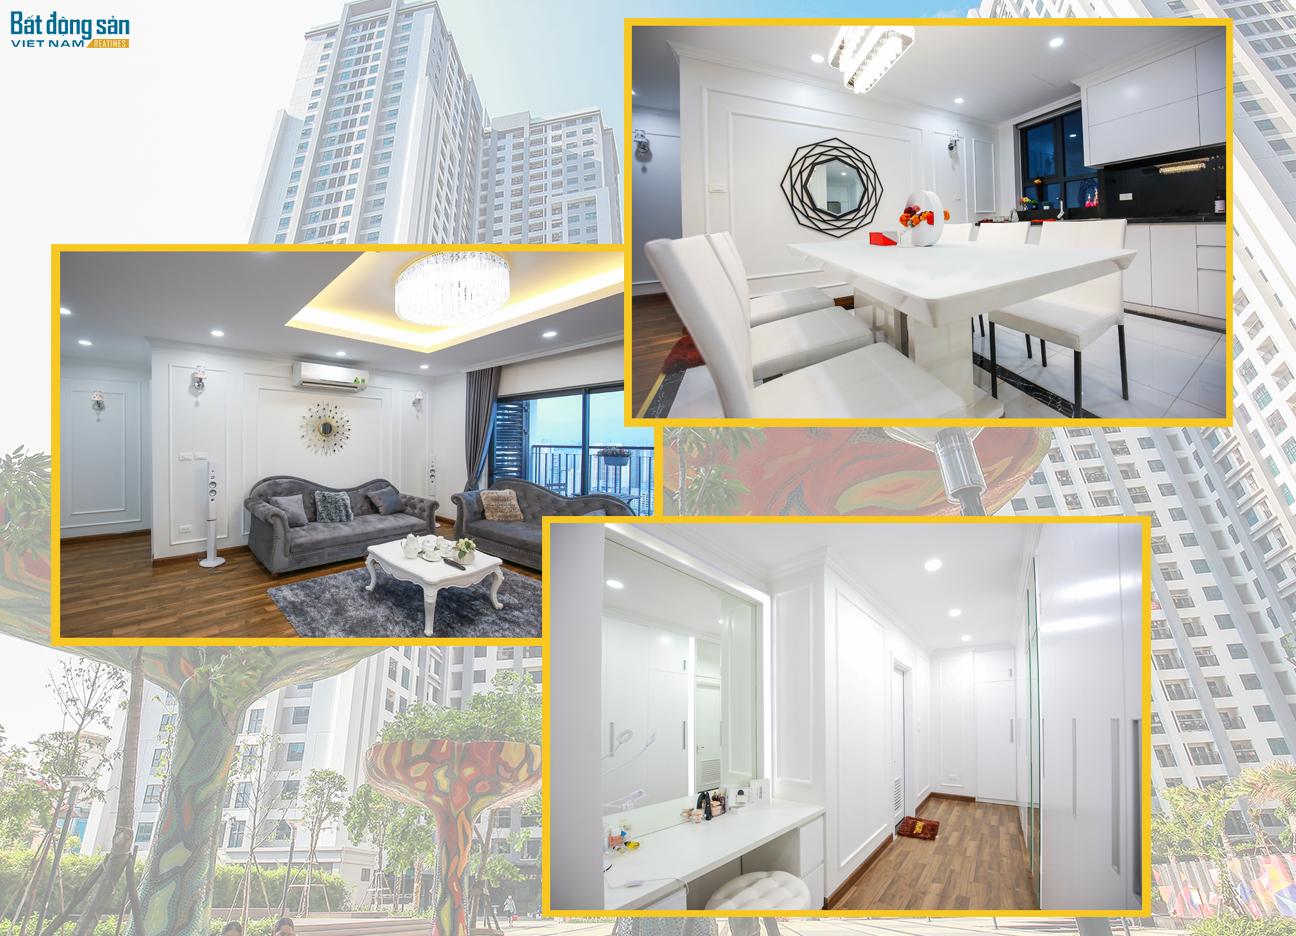 Căn nhà của chị Thùy Linh nằm trên tầng 35 của một dự án chung cư cao cấp và được thiết kế theo phong cách hiện đại hài hòa cùng tông màu chủ đạo là màu trắng